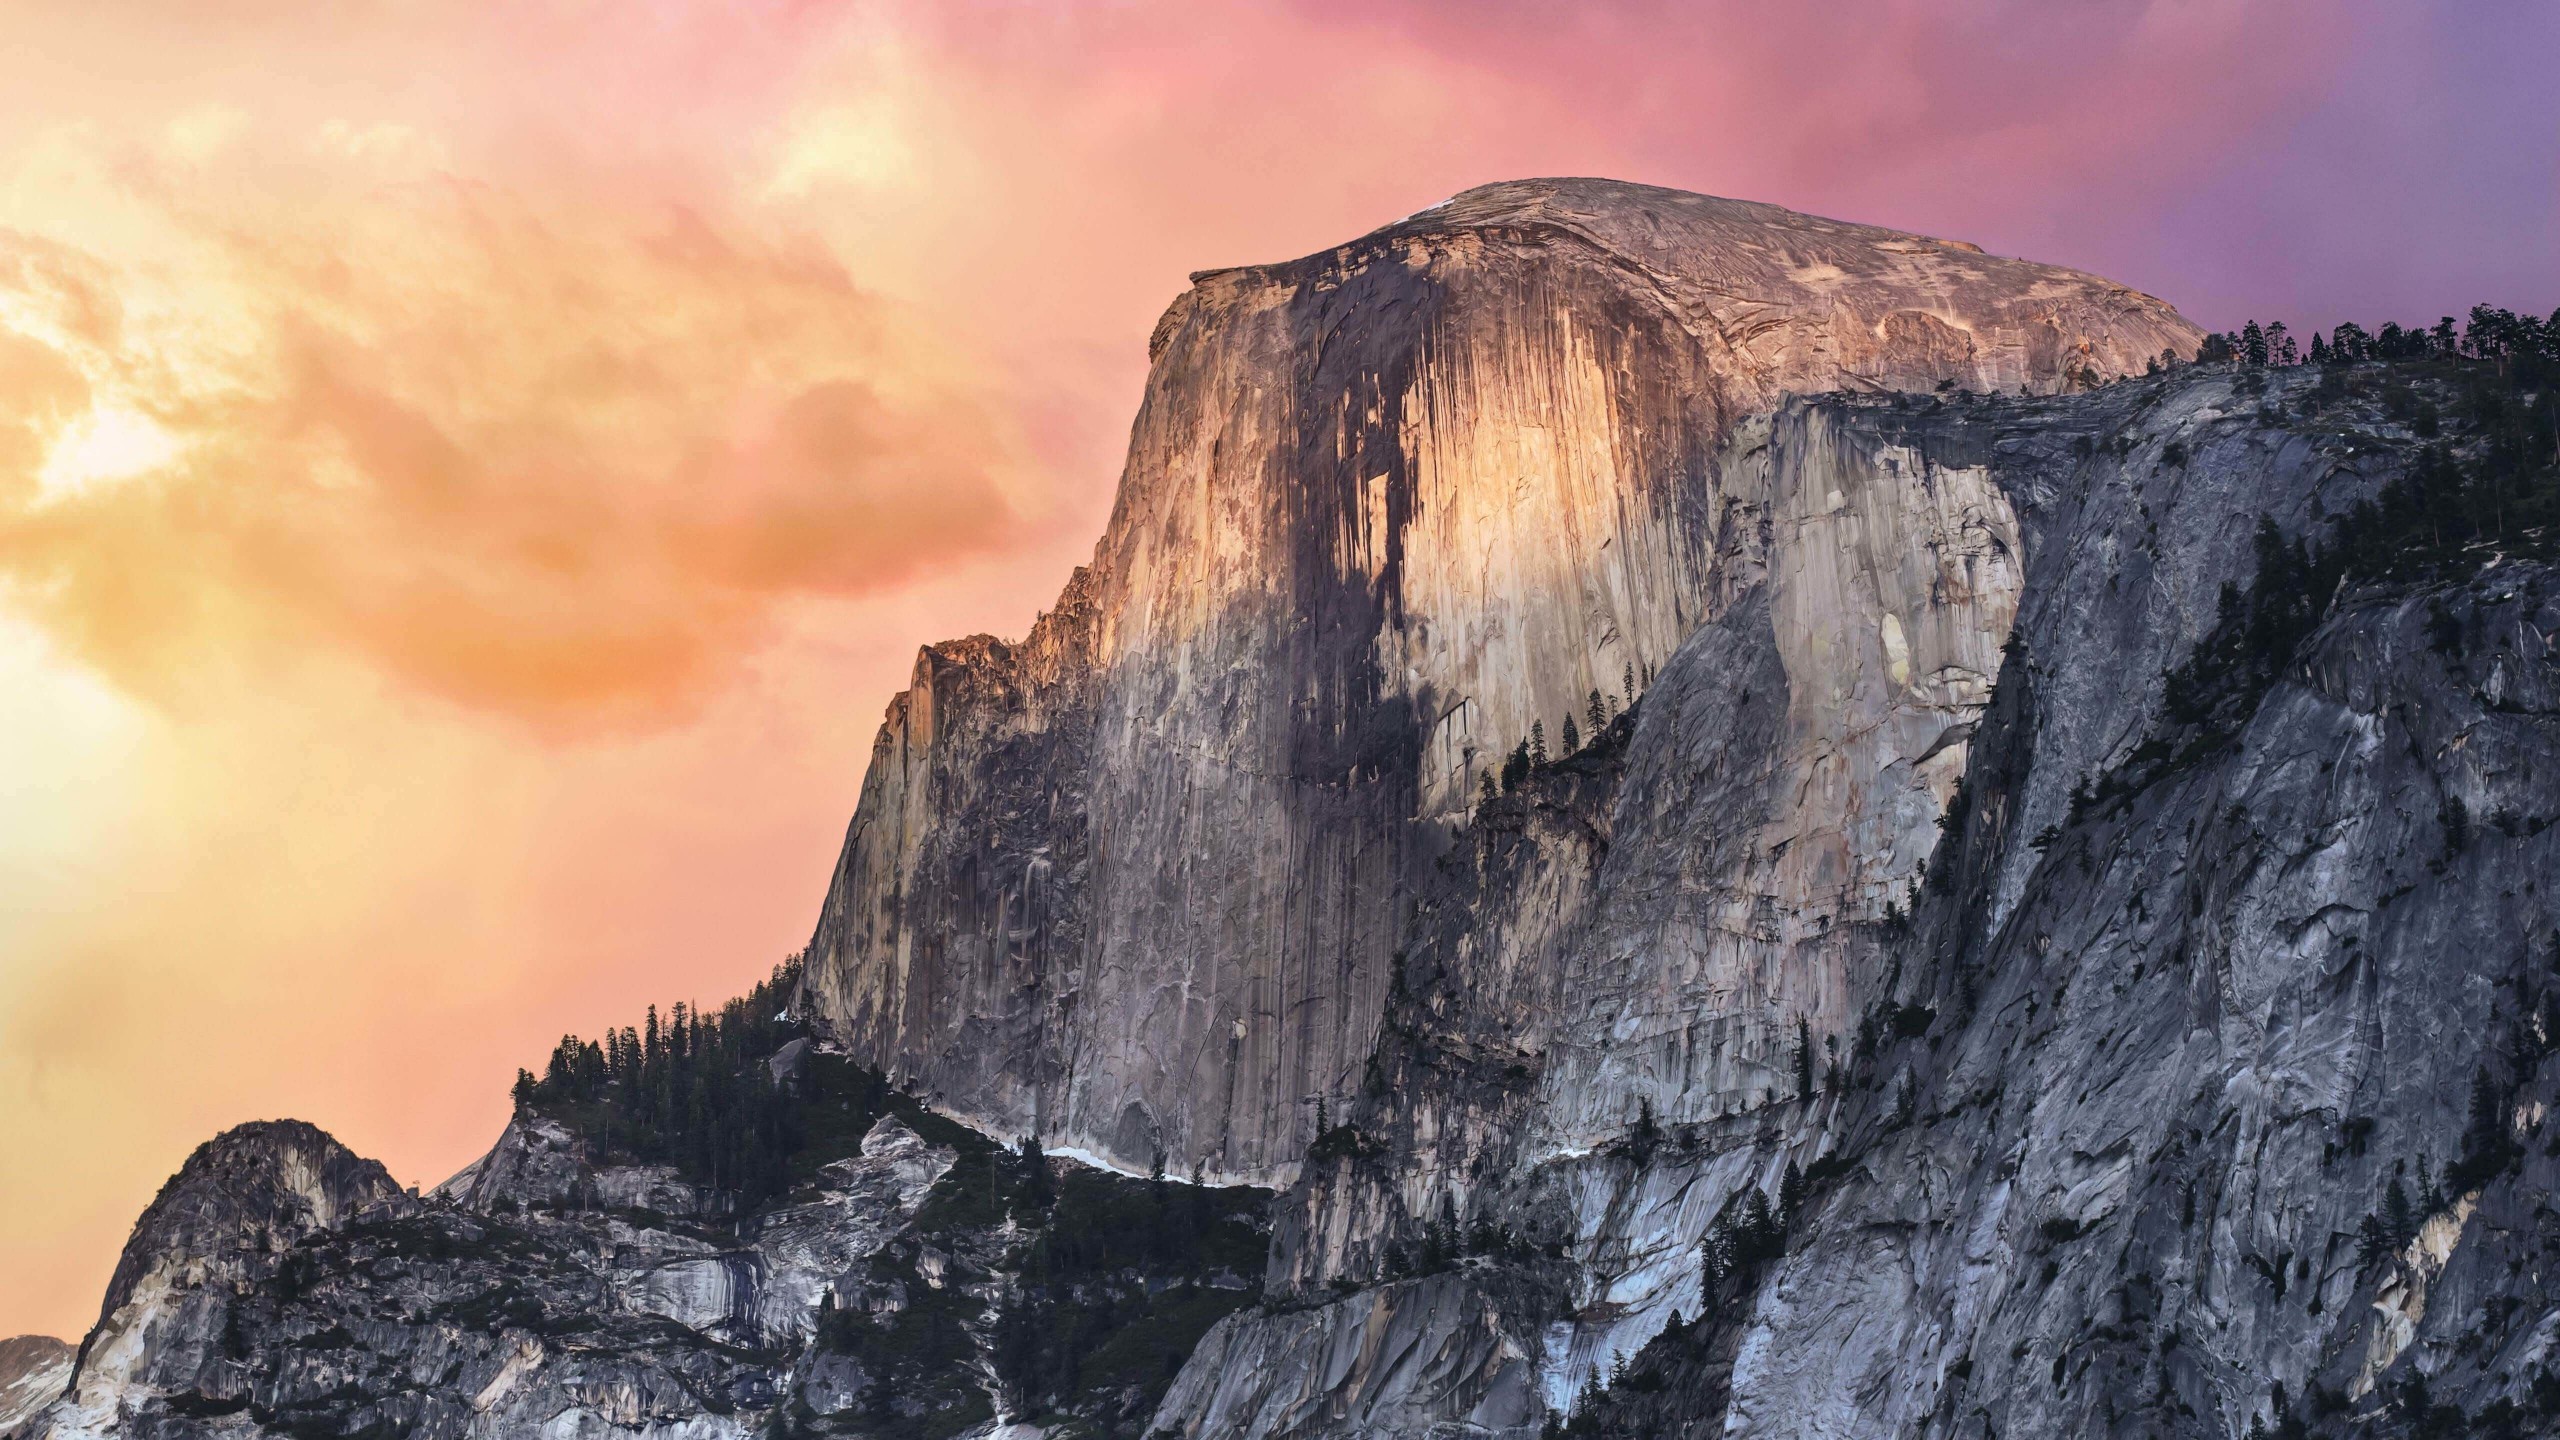 Yosemite Wallpaper for Social Media YouTube Channel Art